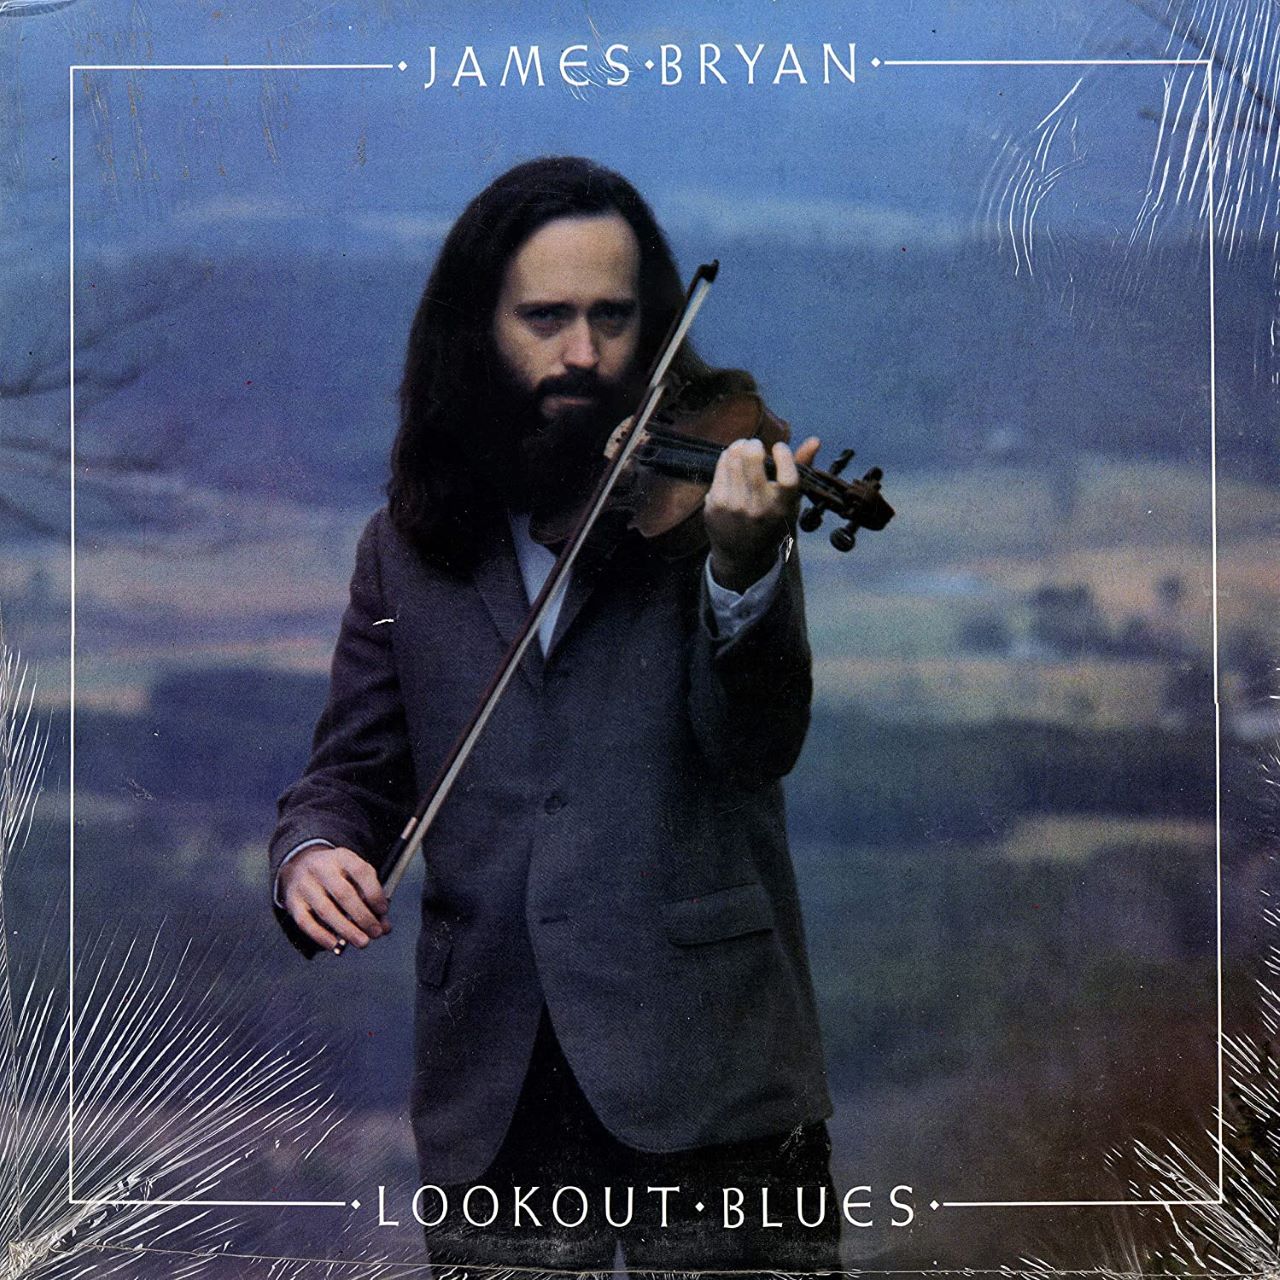 James Bryan - Lookout Blues cover album